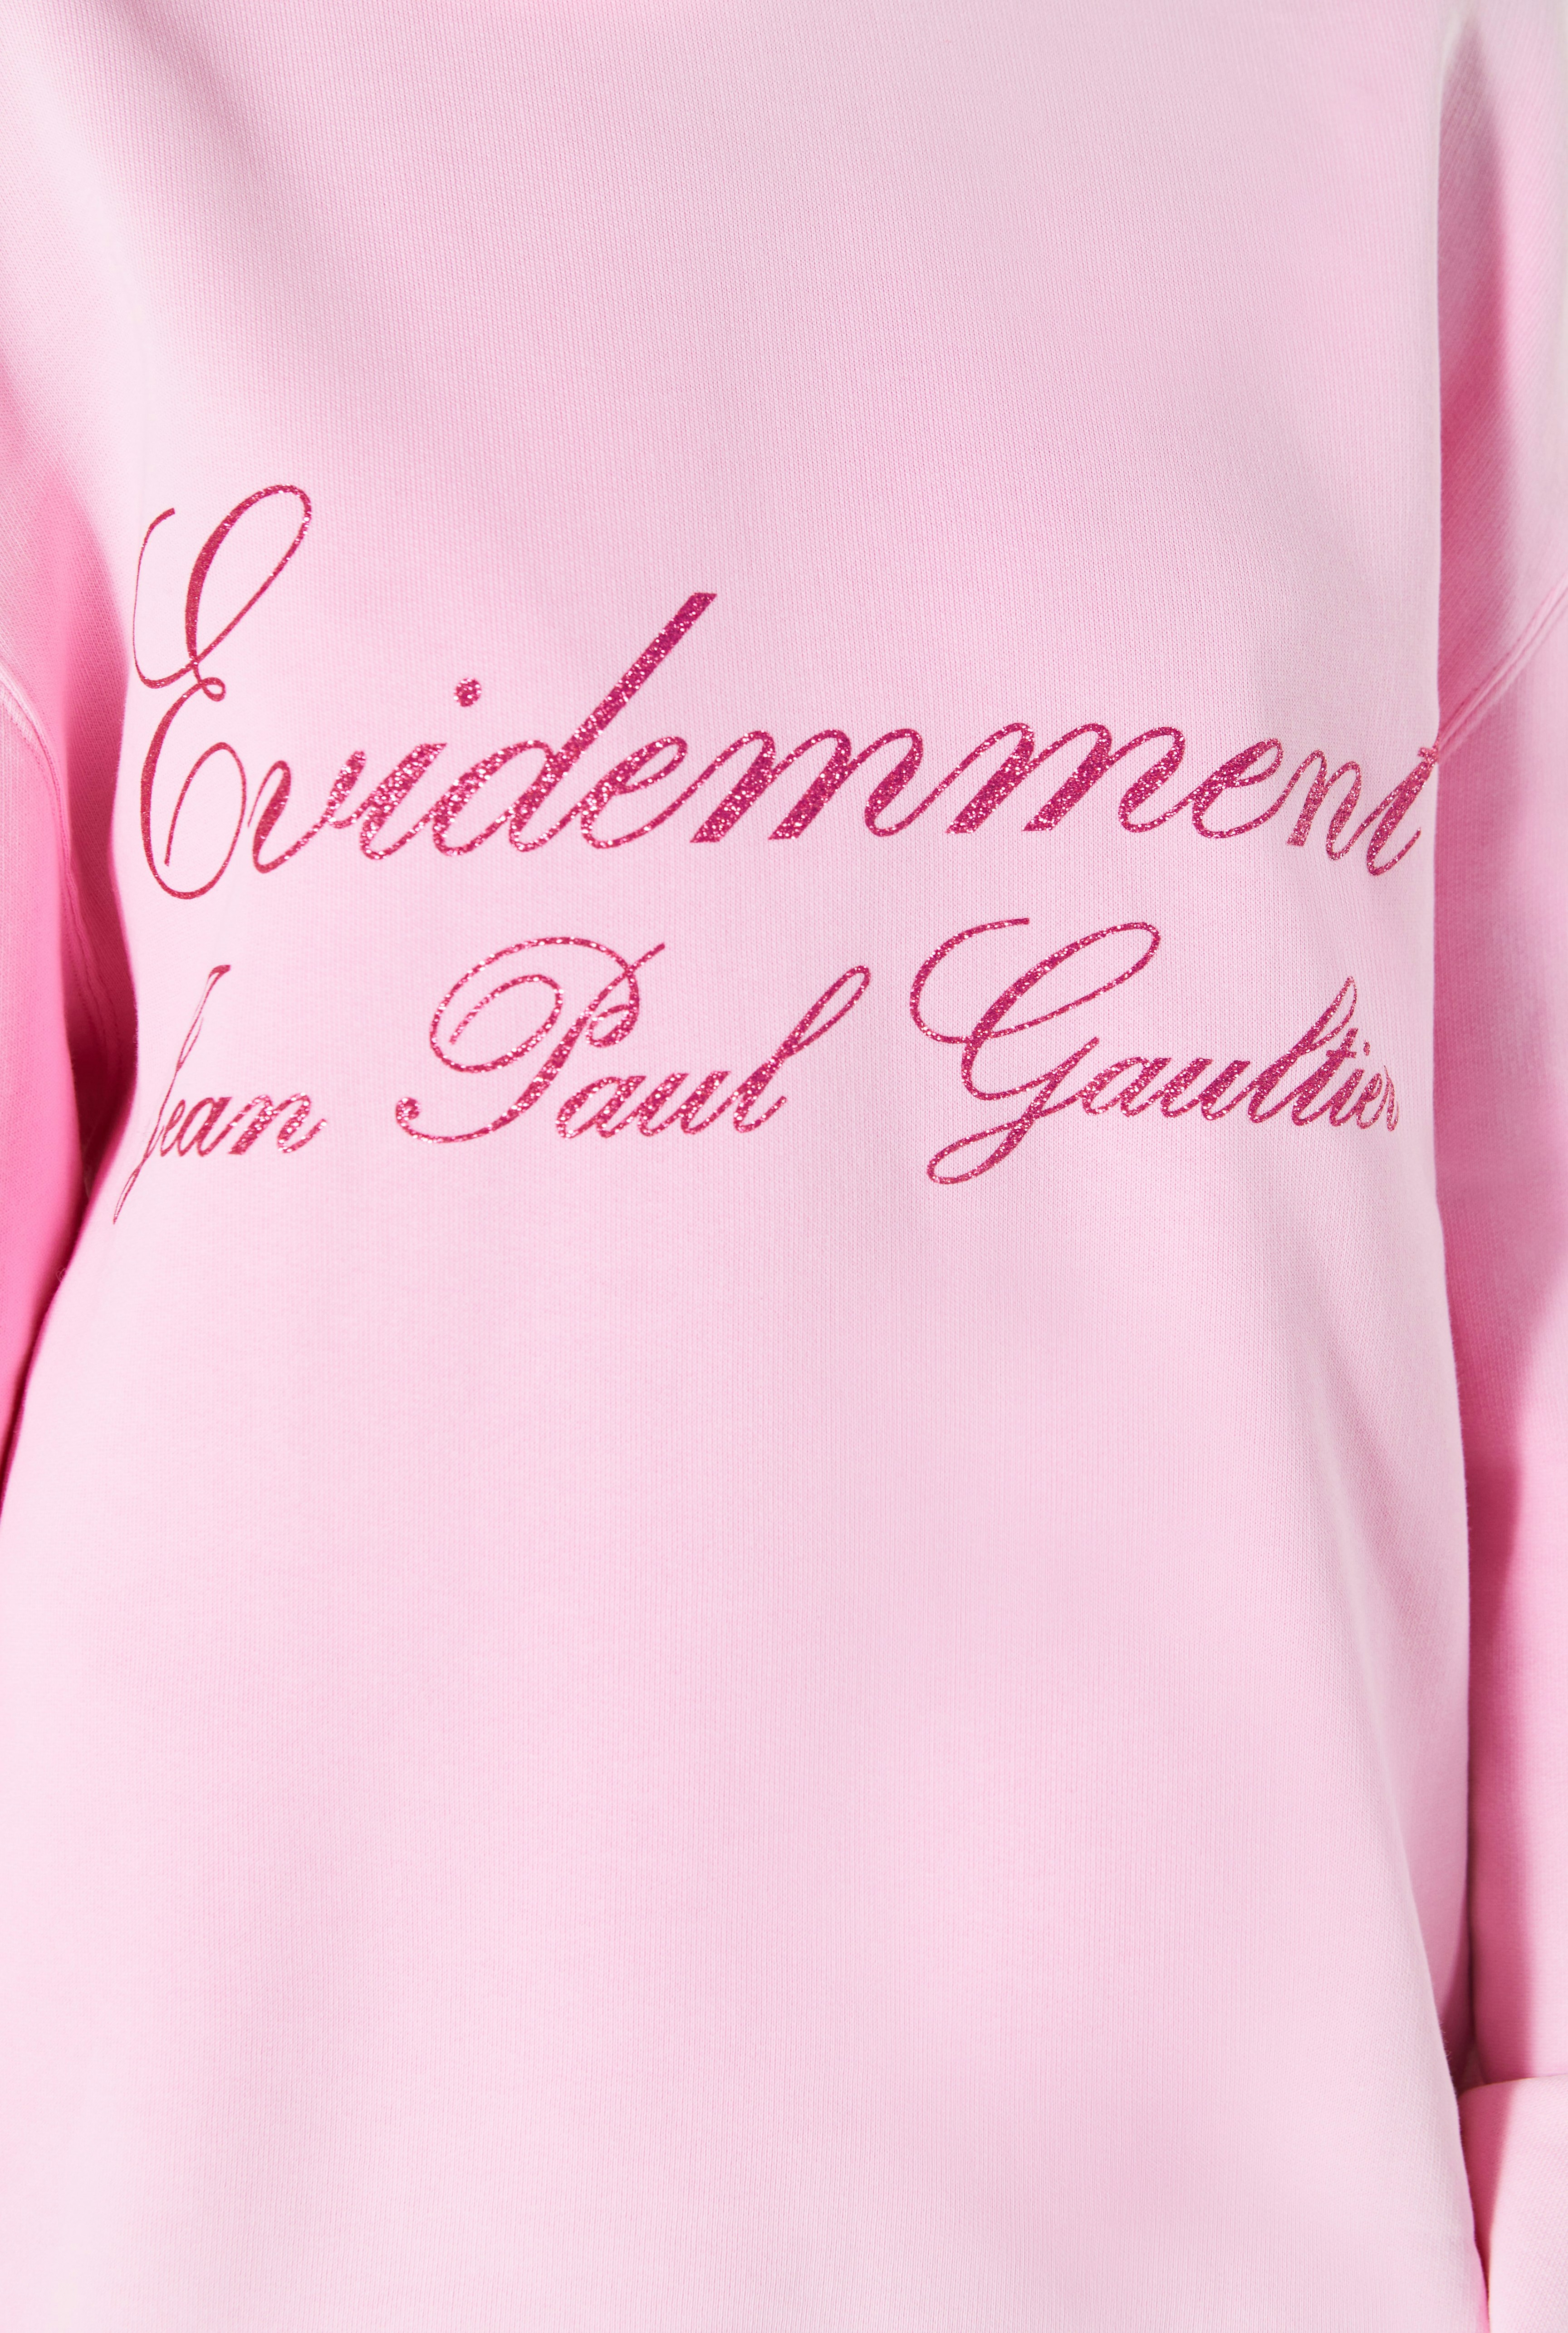 The Pink Hooded Évidemment Sweatshirt